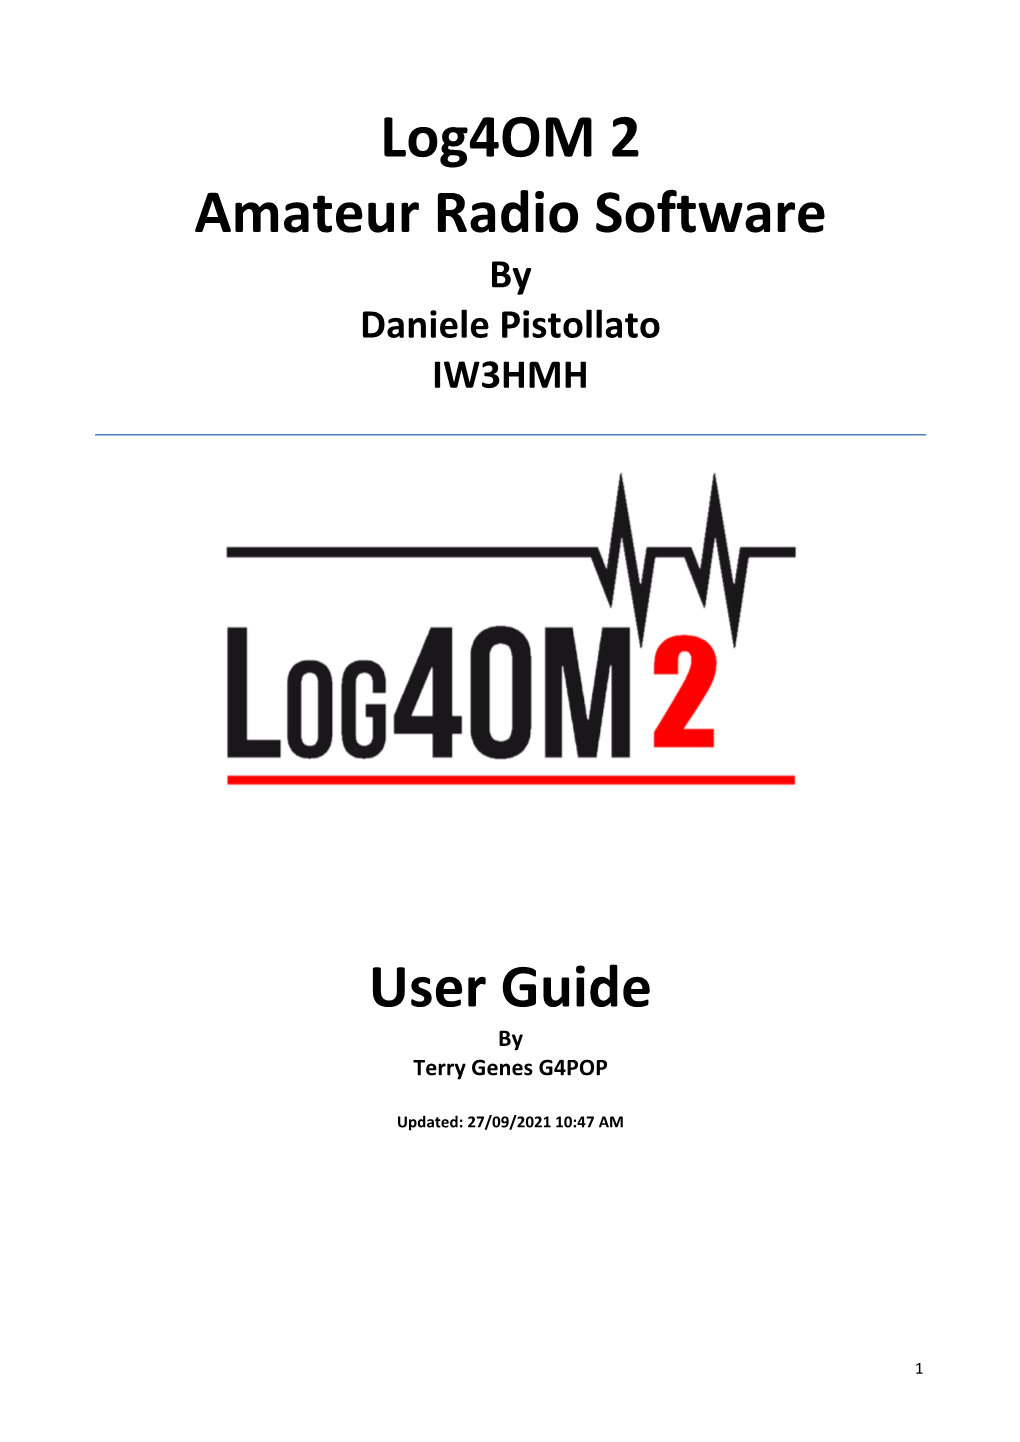 Log4om 2 Amateur Radio Software User Guide